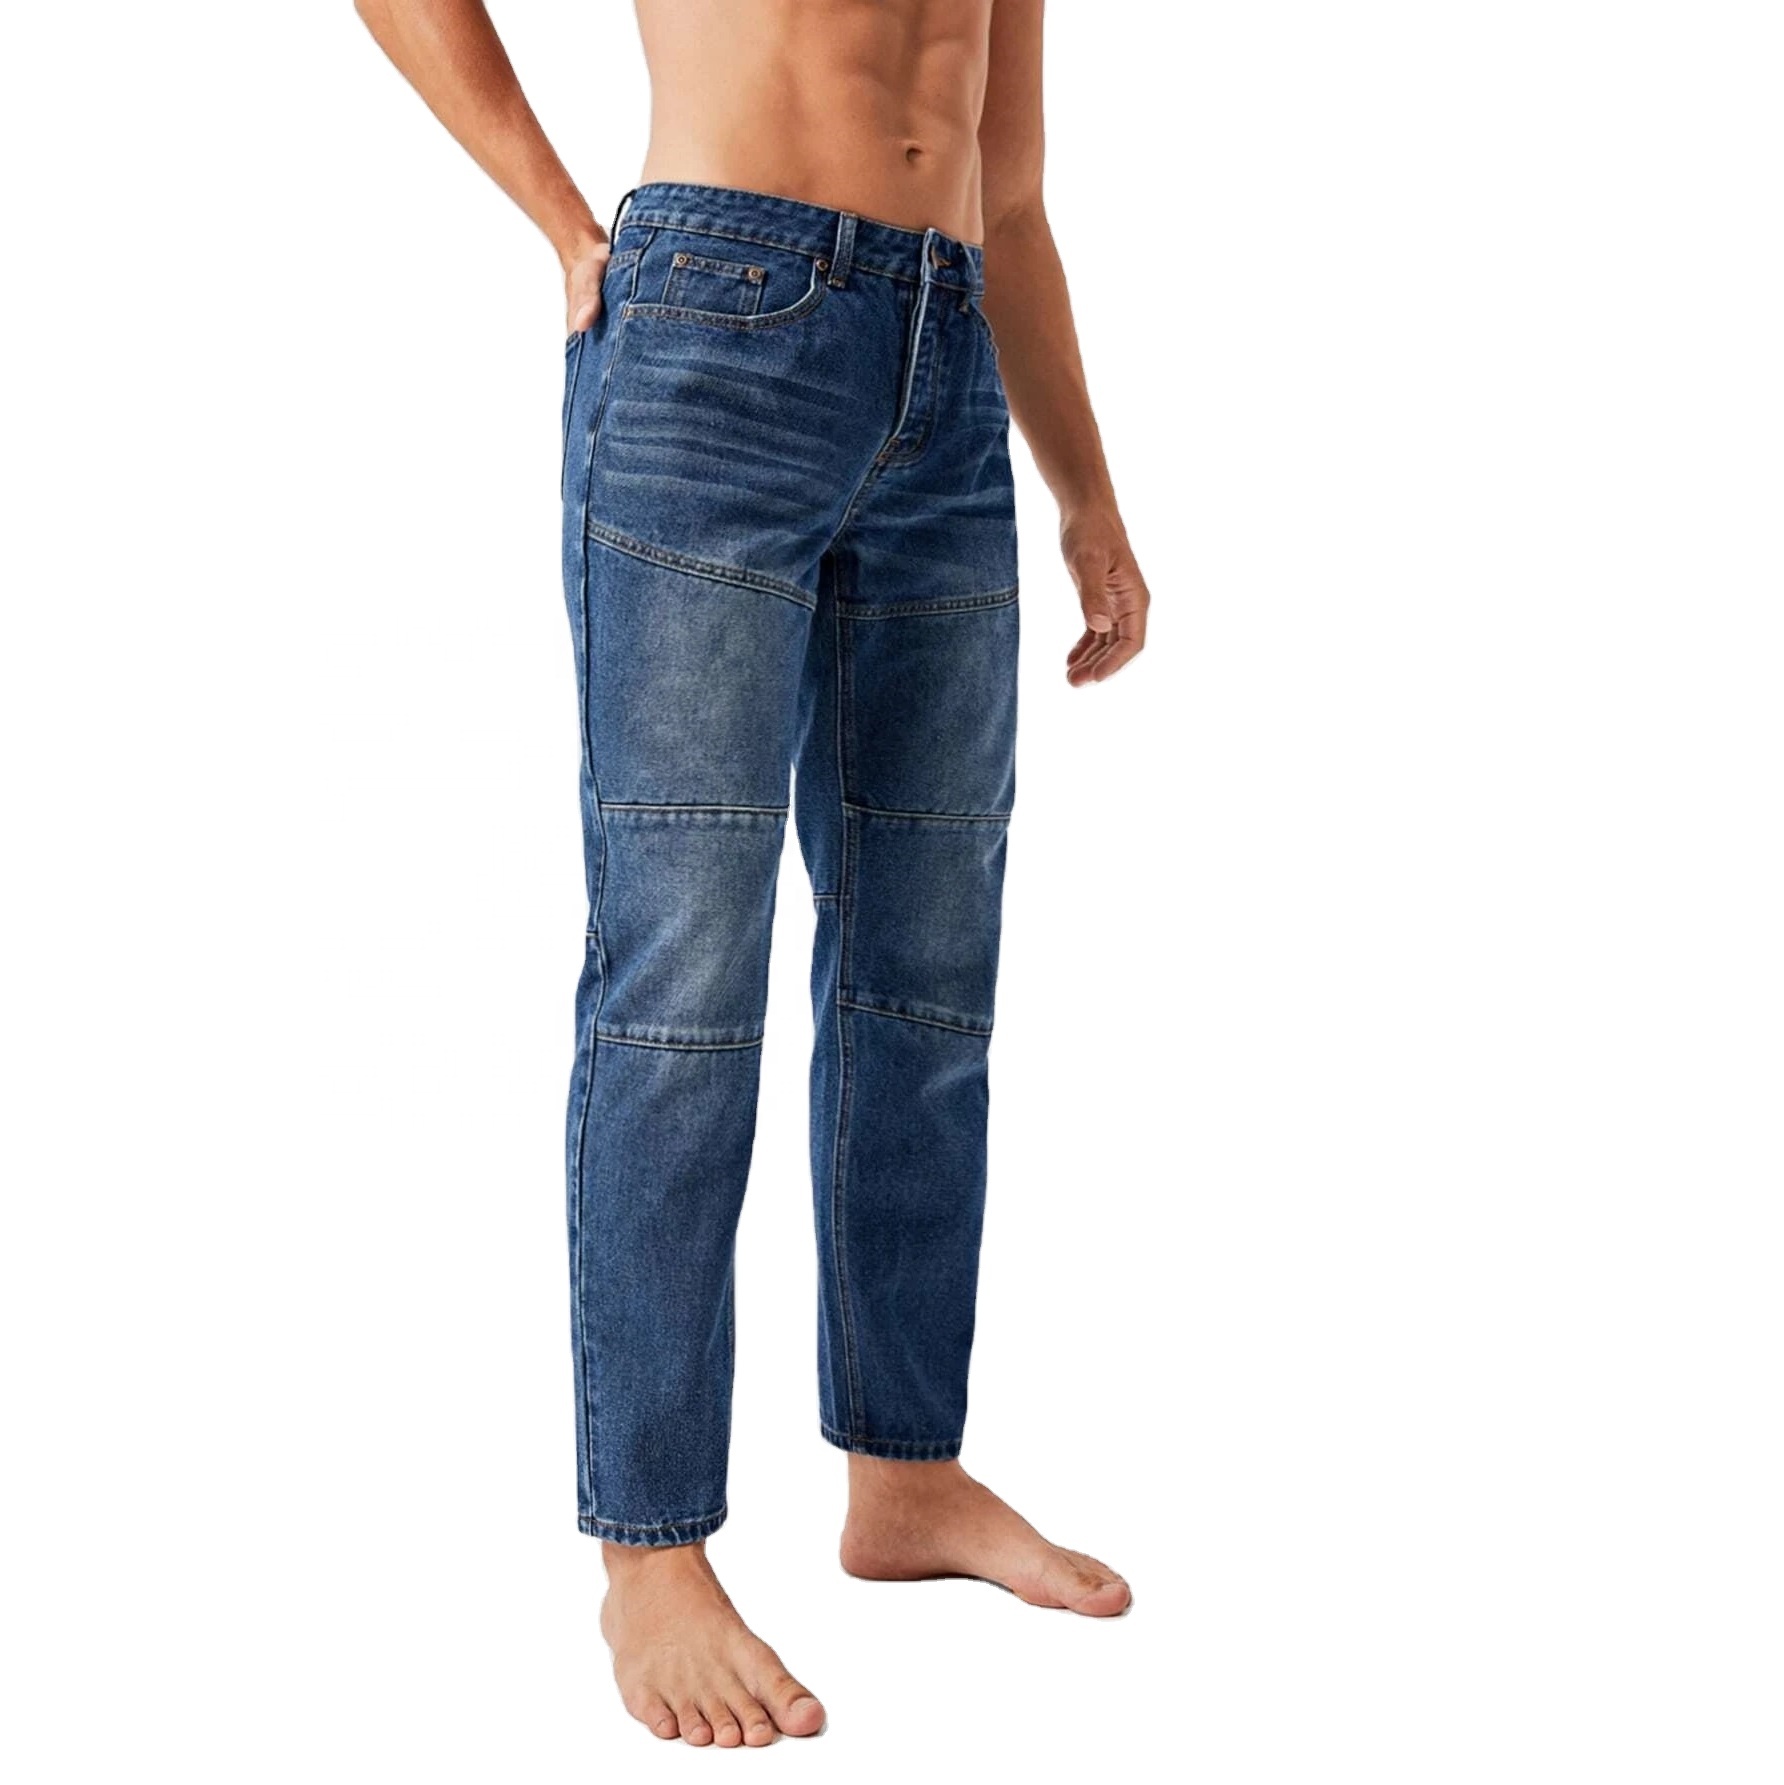 fashion jeans pants men jeans stacked denim blue low waist patch blue jeans